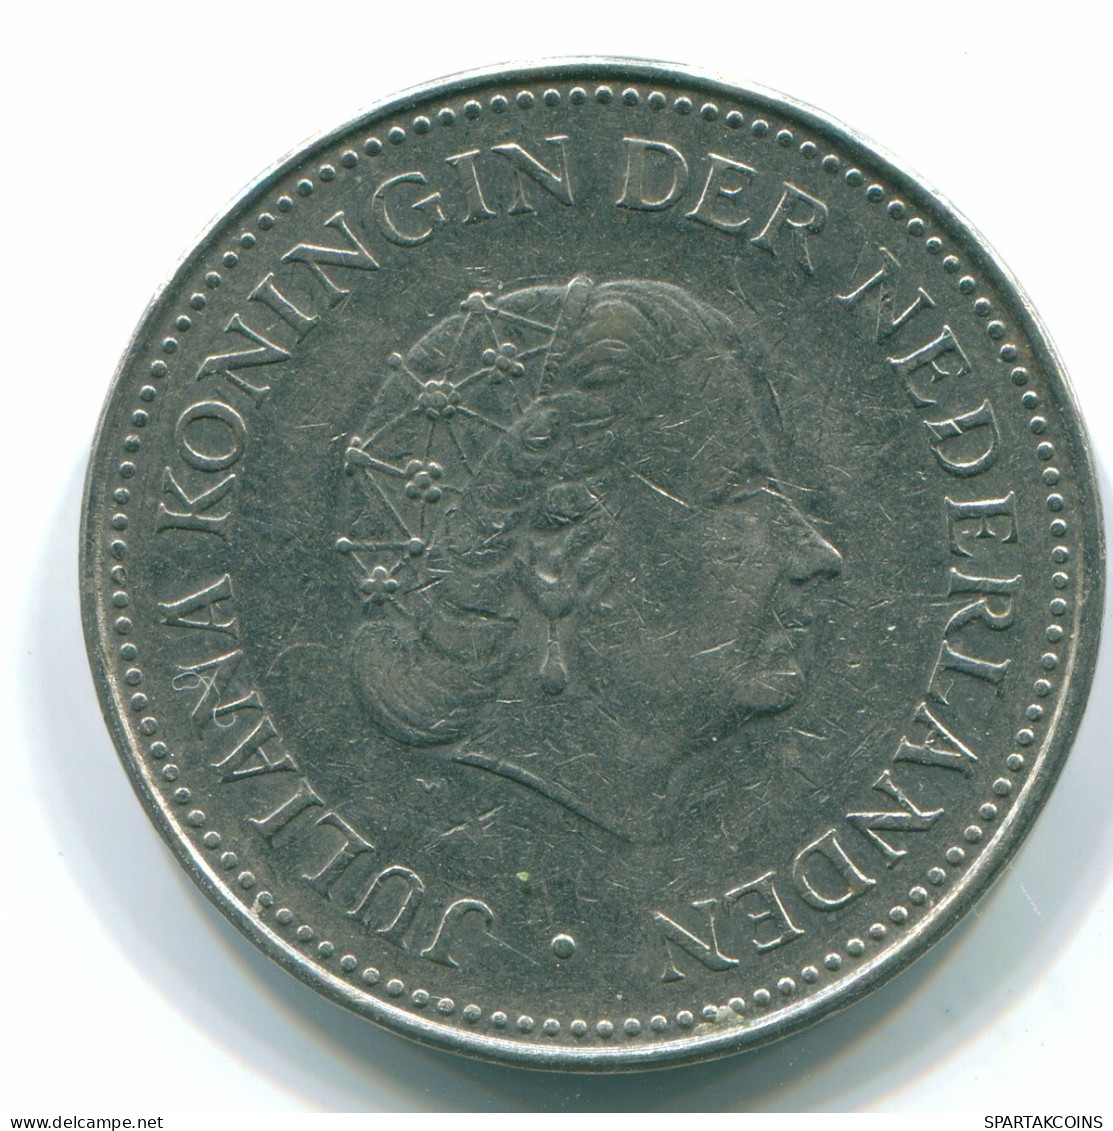 1 GULDEN 1971 NETHERLANDS ANTILLES Nickel Colonial Coin #S11988.U.A - Niederländische Antillen